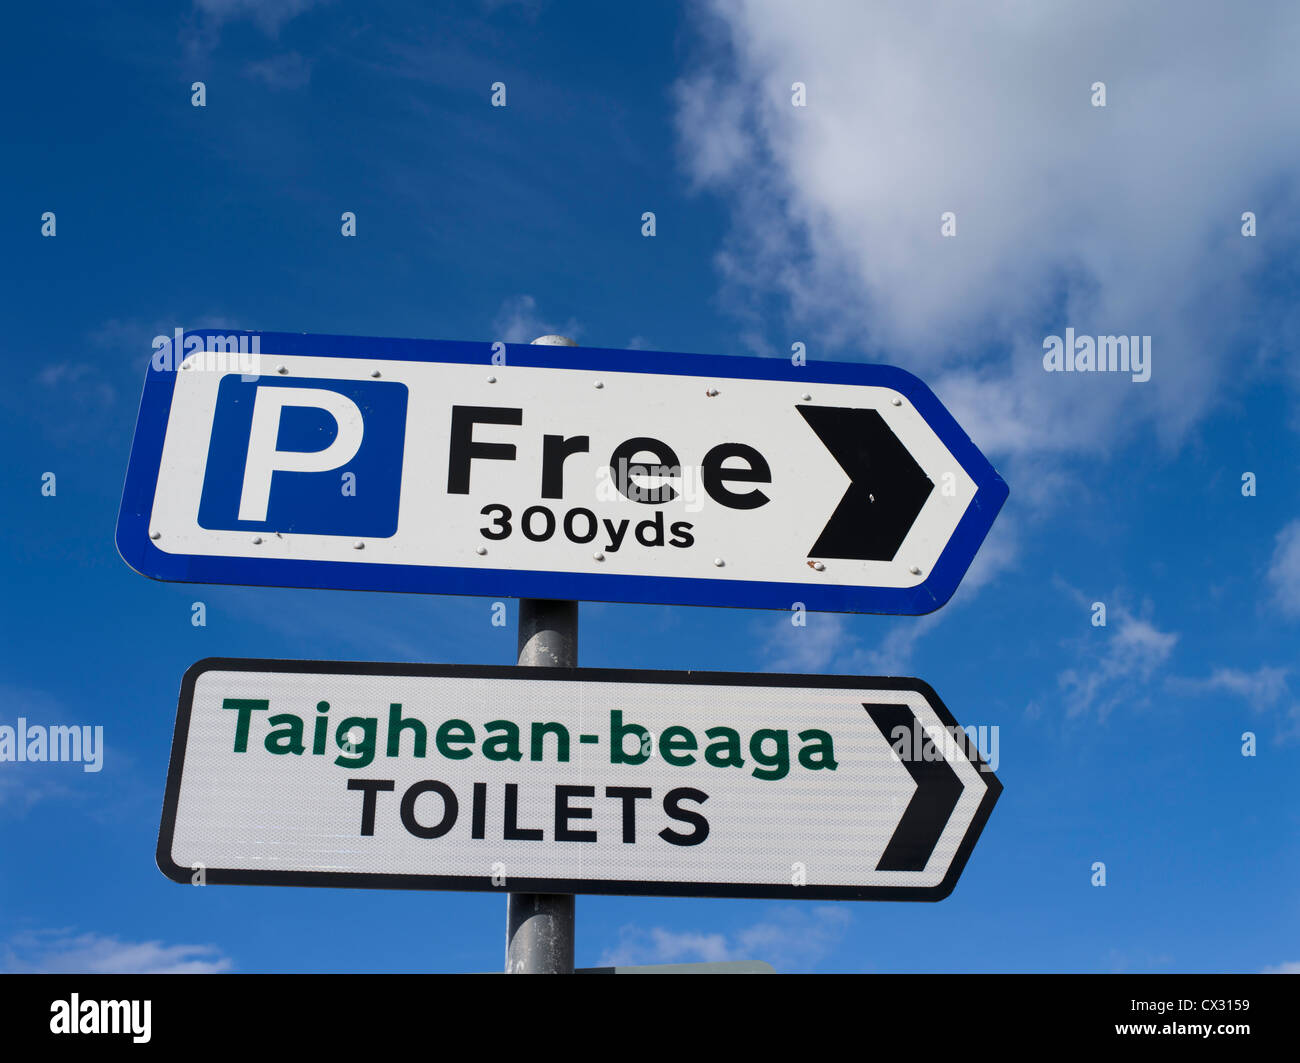 panneaux de toilettes dh PANNEAU UK bilingue panneau ecosse trois manières pour dire les toilettes publiques services de langue gaélique Banque D'Images